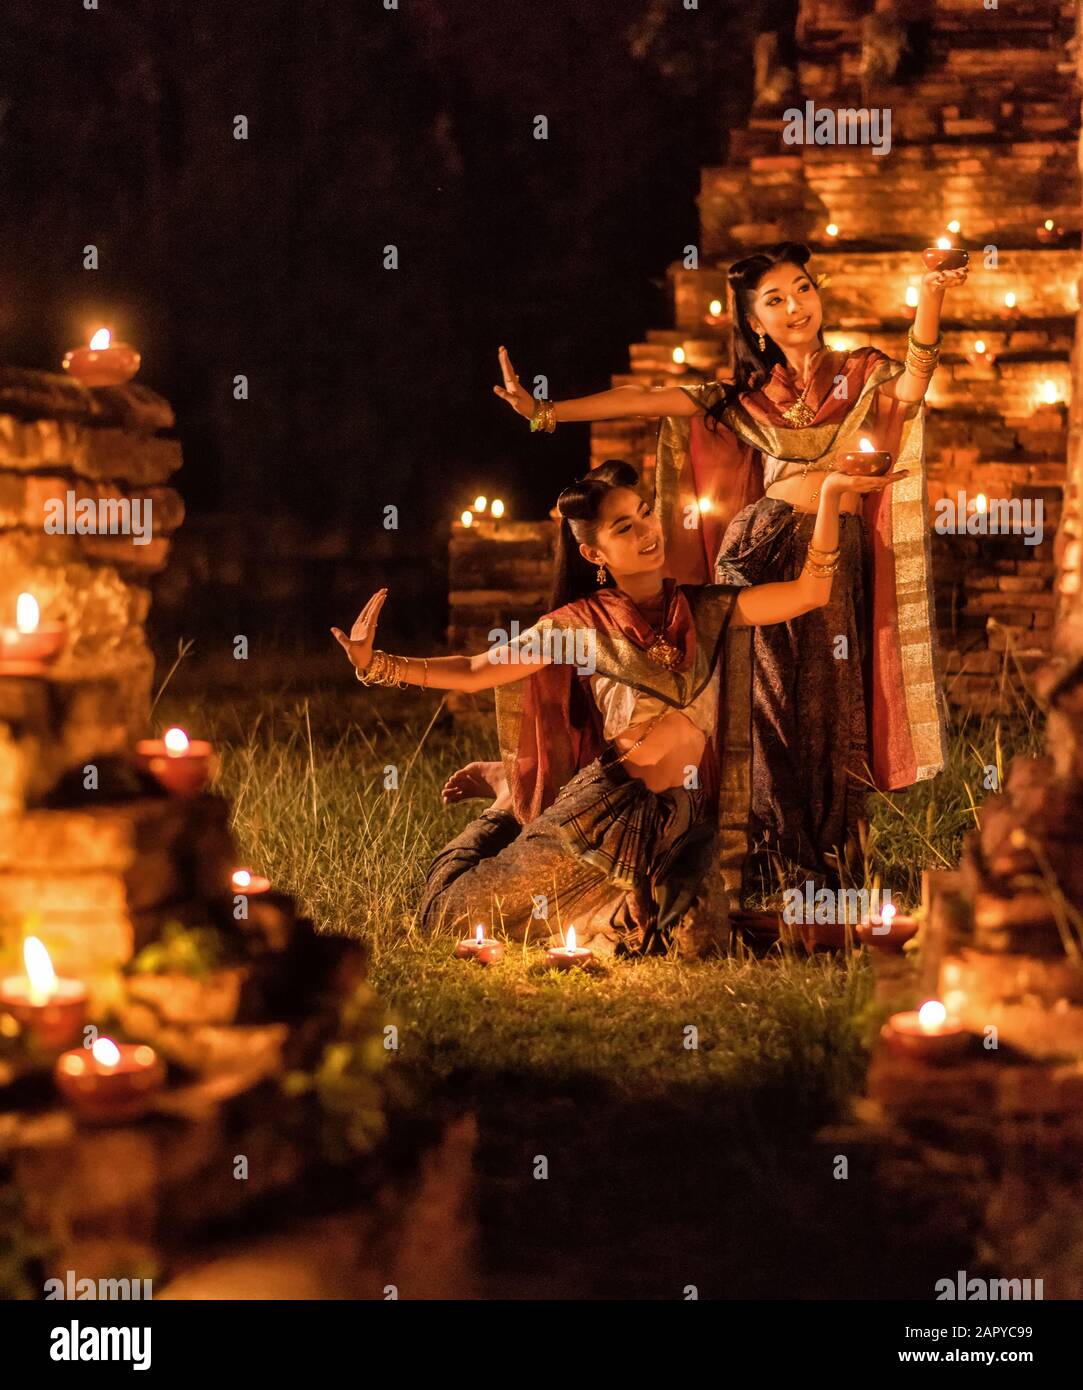 Une fille thaïlandaise dansante dans une robe de style Ayutthaya avec bougie la nuit Banque D'Images